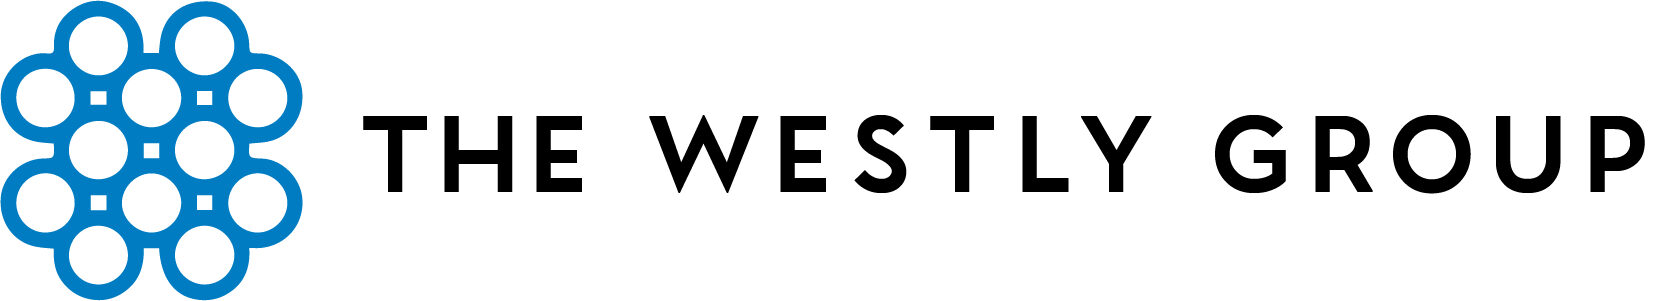 westly group_logo